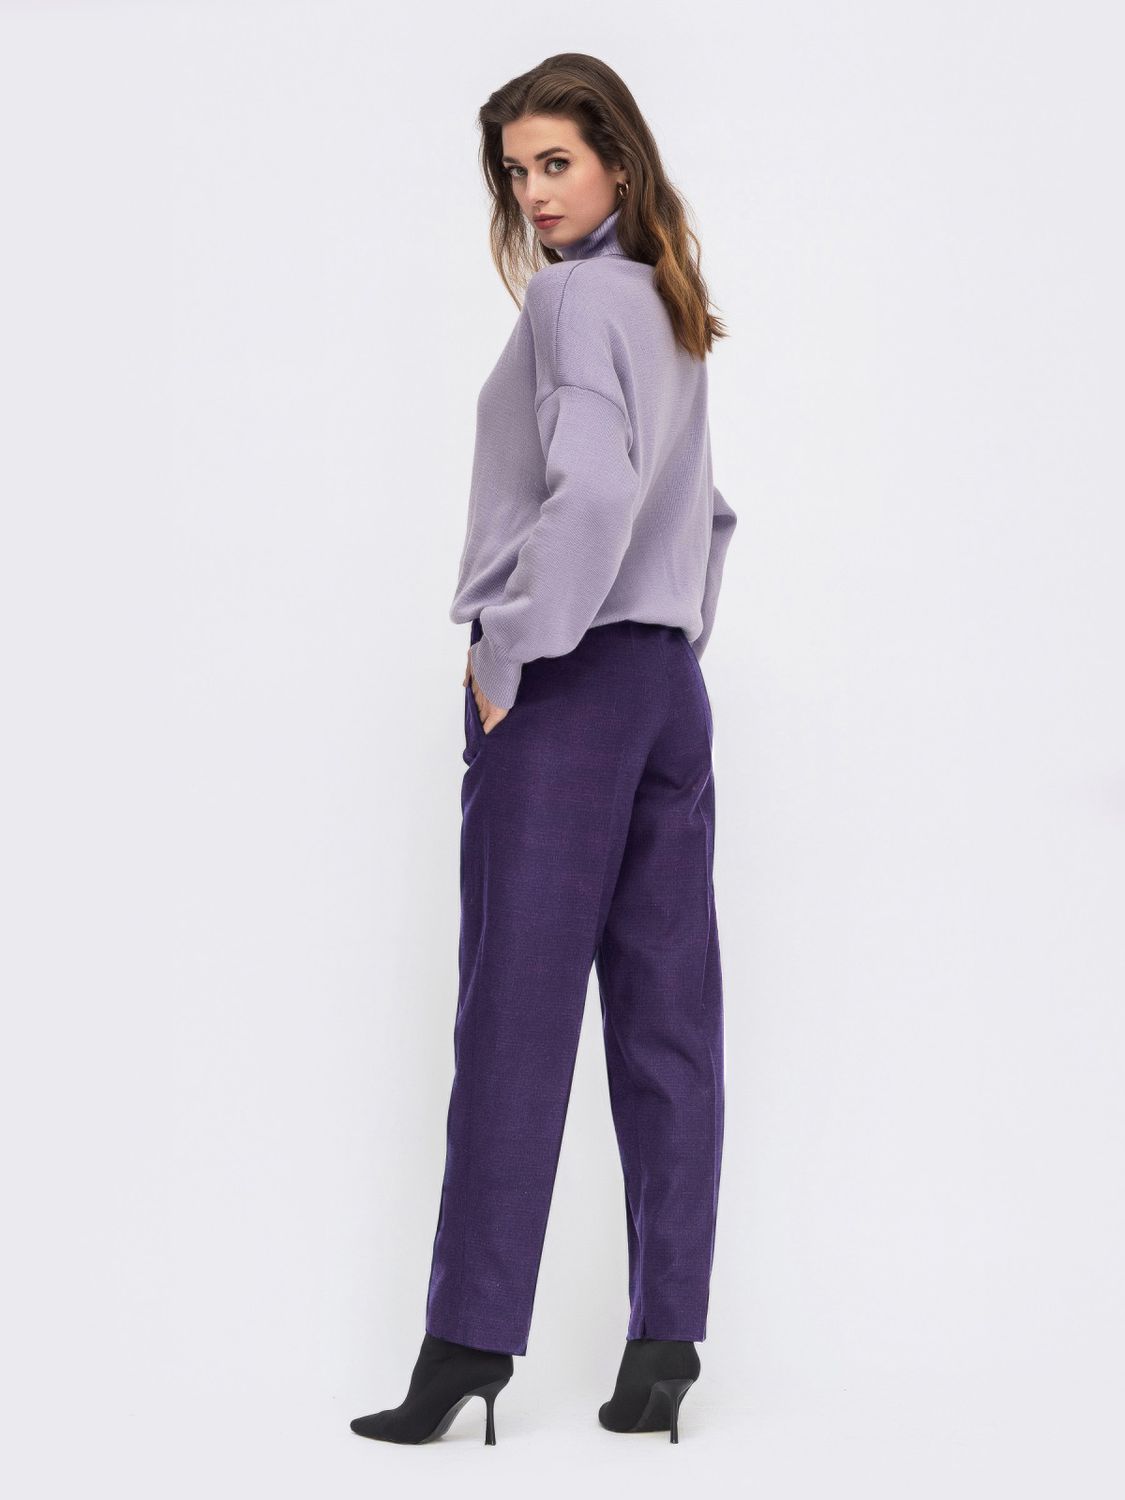 Класичні штани в клітинку зі фіолетовими стрілками - фото